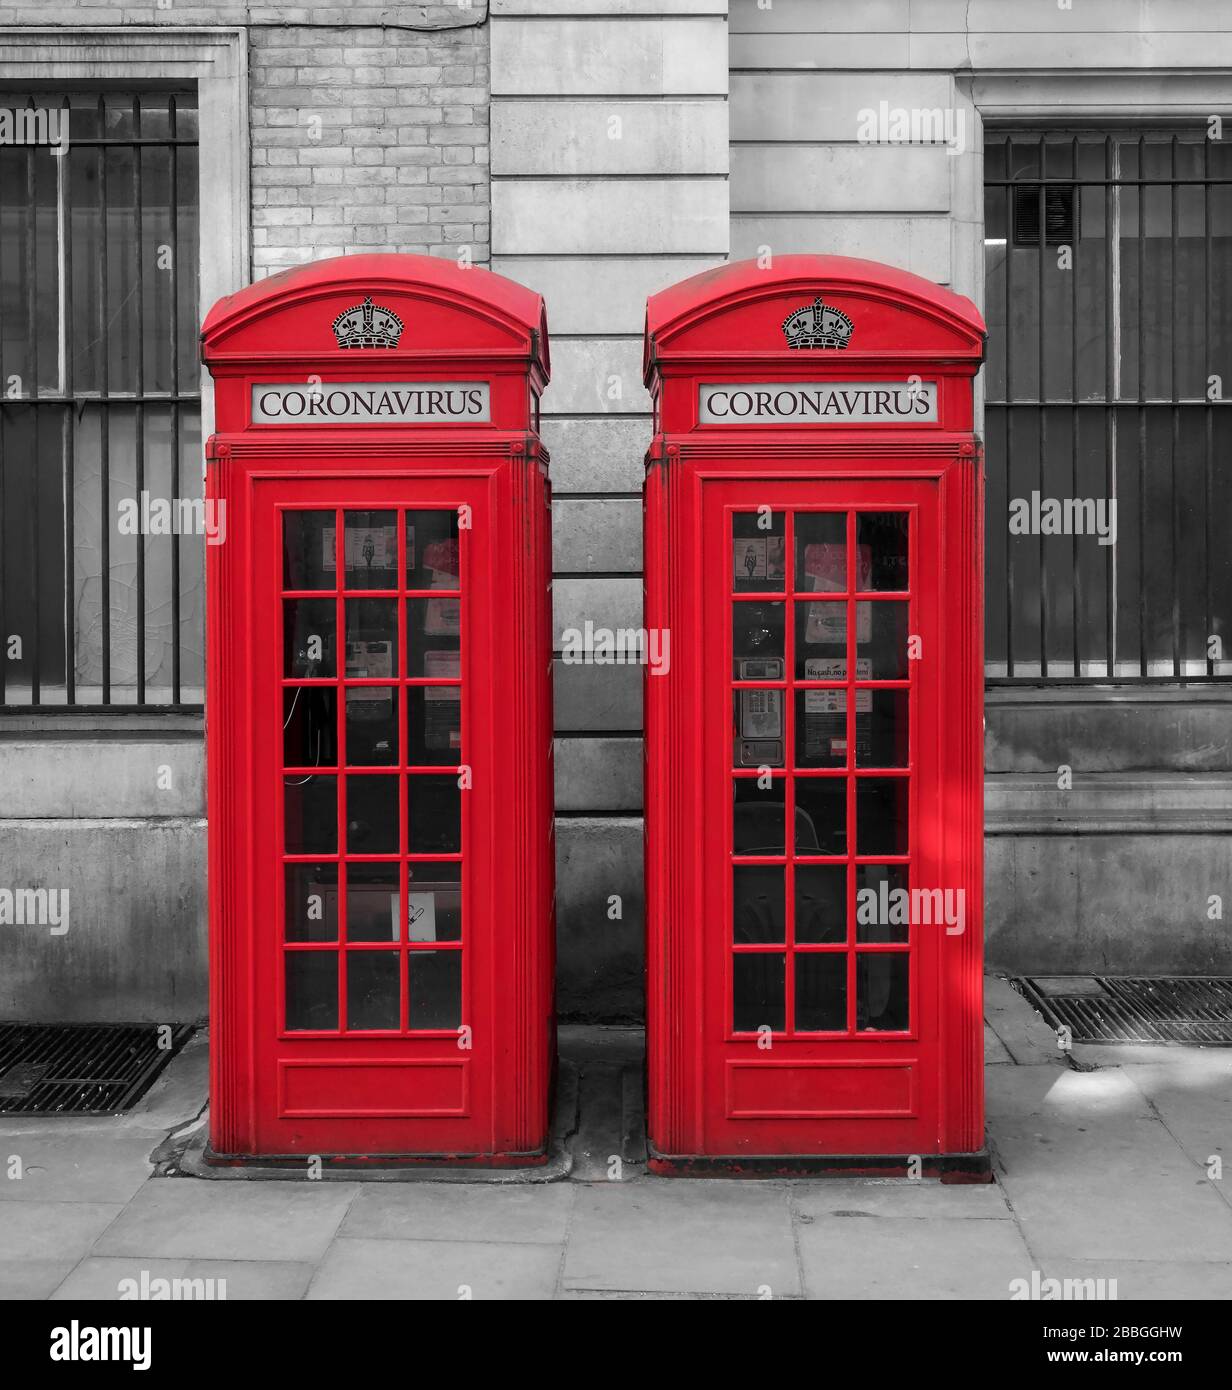 Coronavirus ou Covid 19 Illustration sur les boîtes téléphoniques rouges britanniques, Londres, Angleterre, Royaume-Uni Banque D'Images